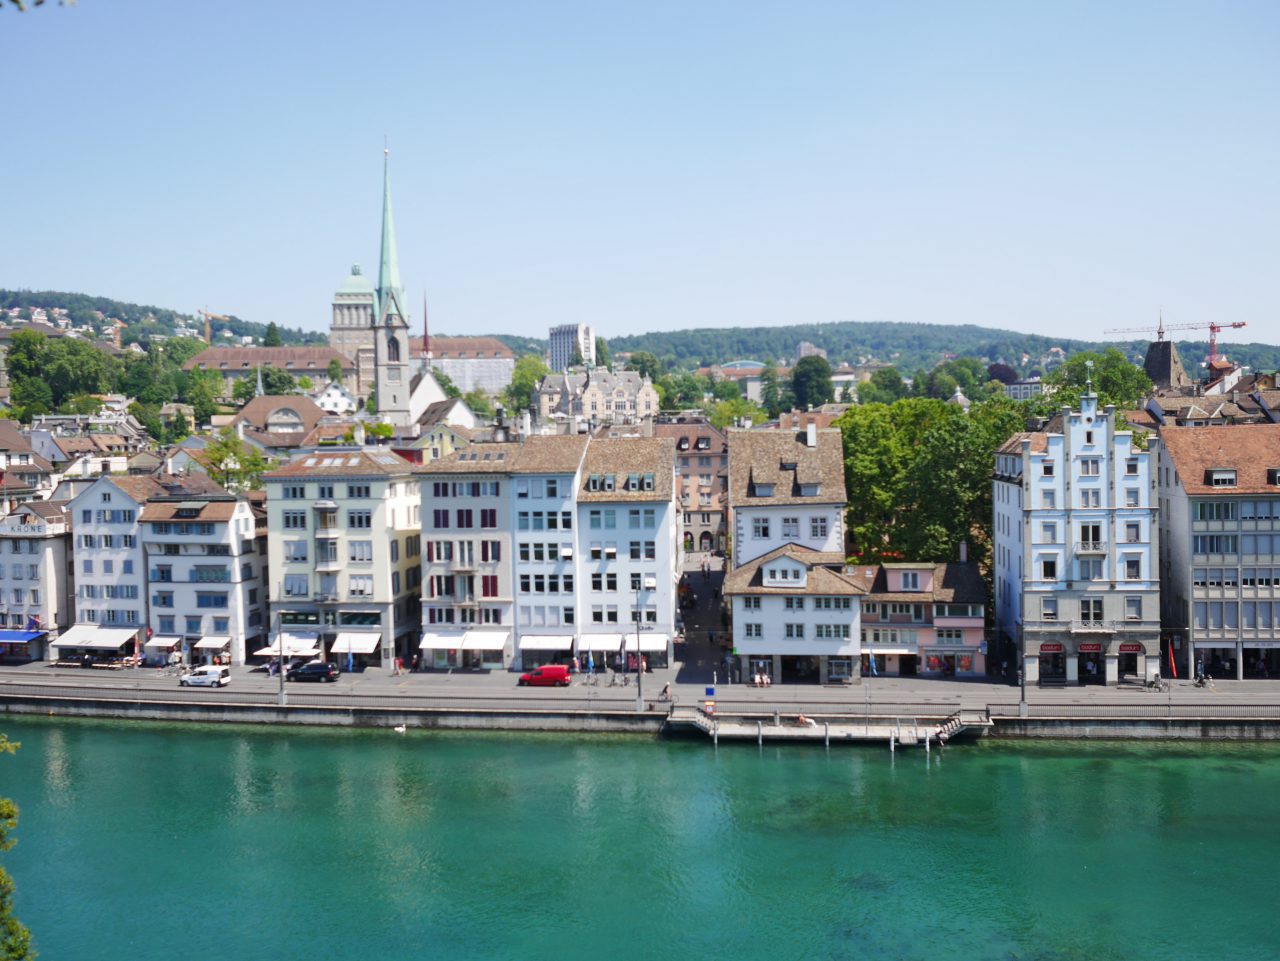 Free View point in Zurich